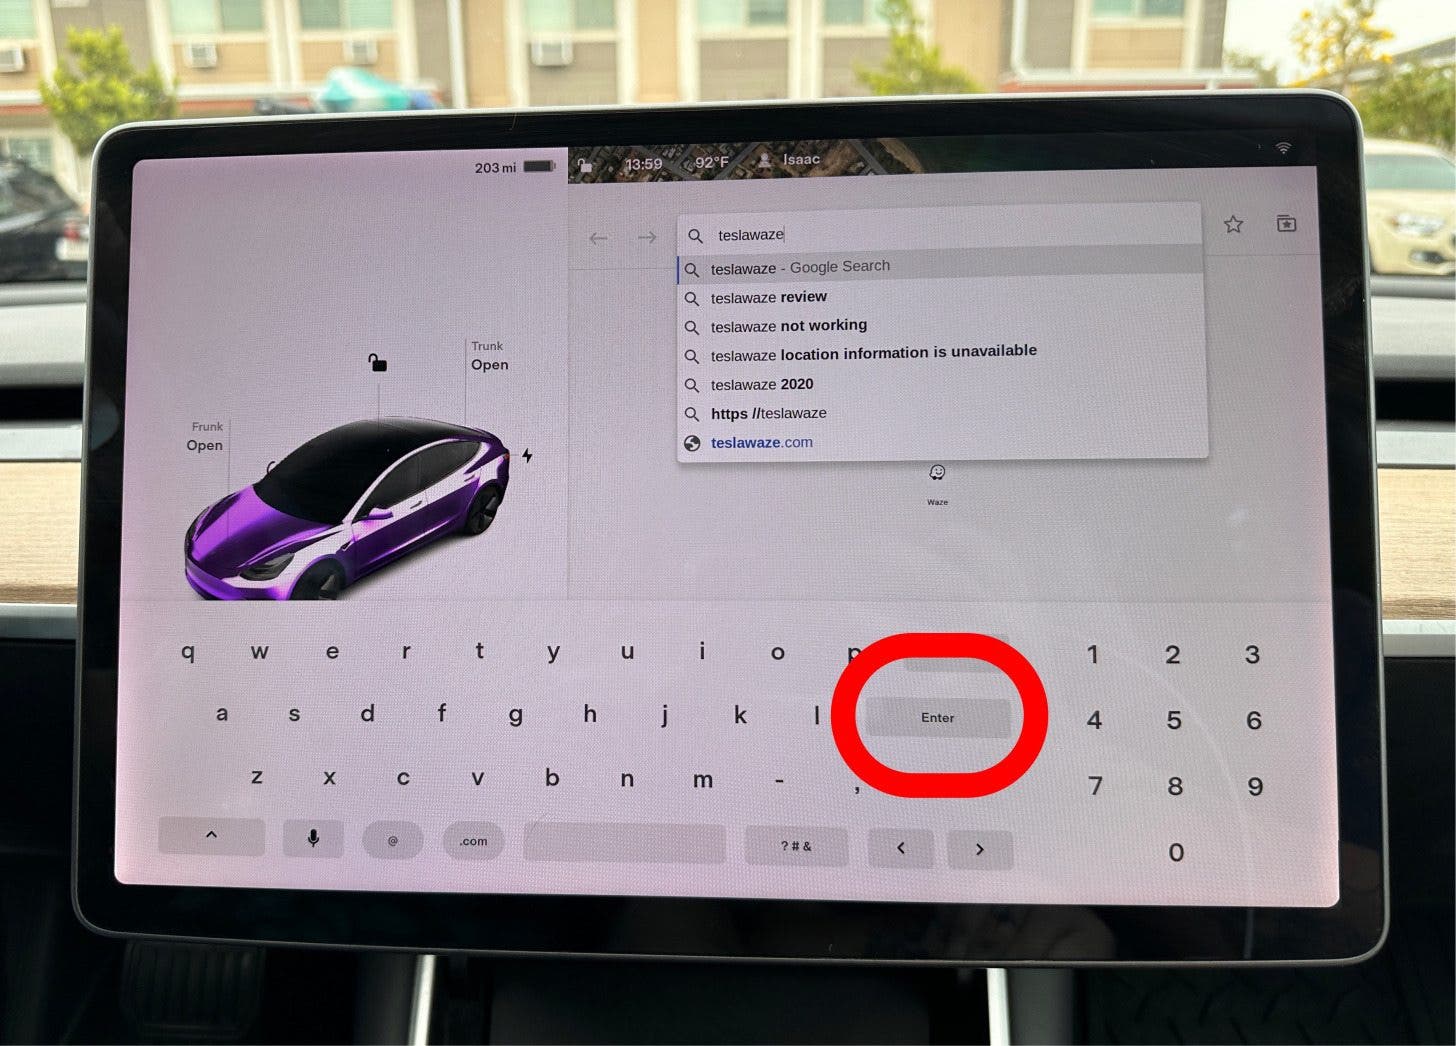 Escribe Tesla Waze en la barra de búsqueda, luego presiona Enter.